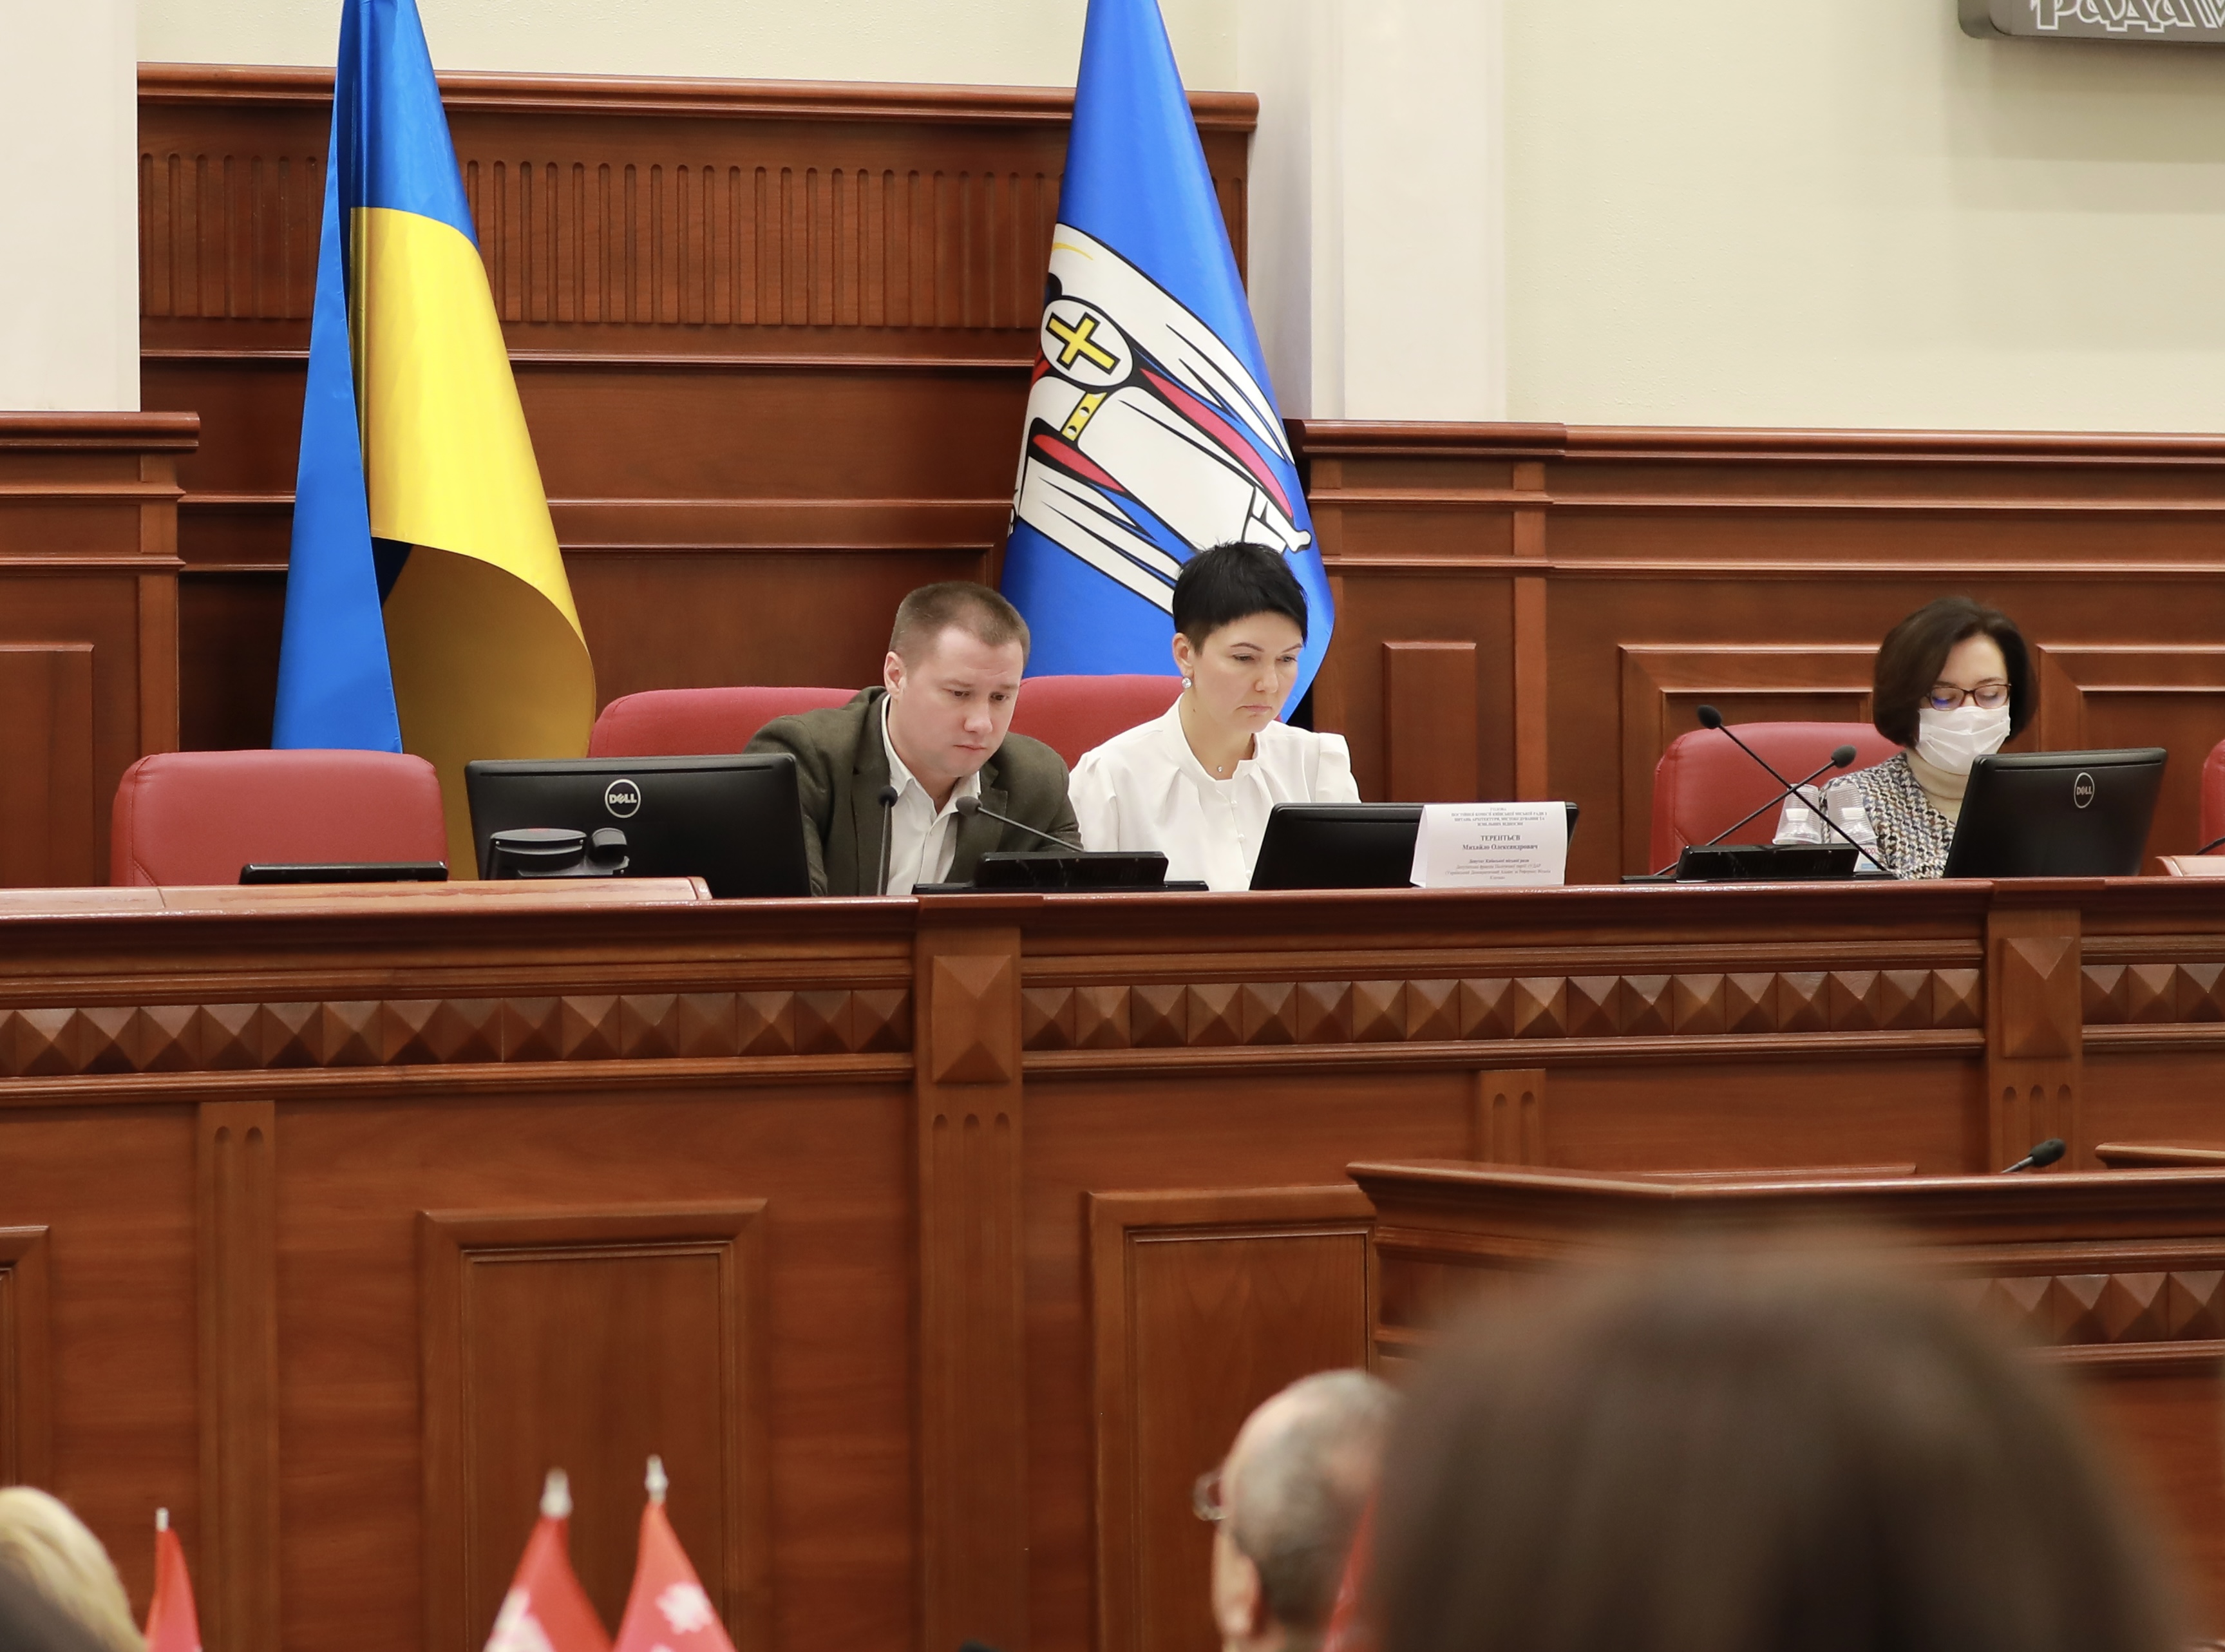 Более 171 млн гривен поступит в бюджет города Киева от продажи участков на земельных торгах, проведения экспертной денежной оценки и прямых продаж